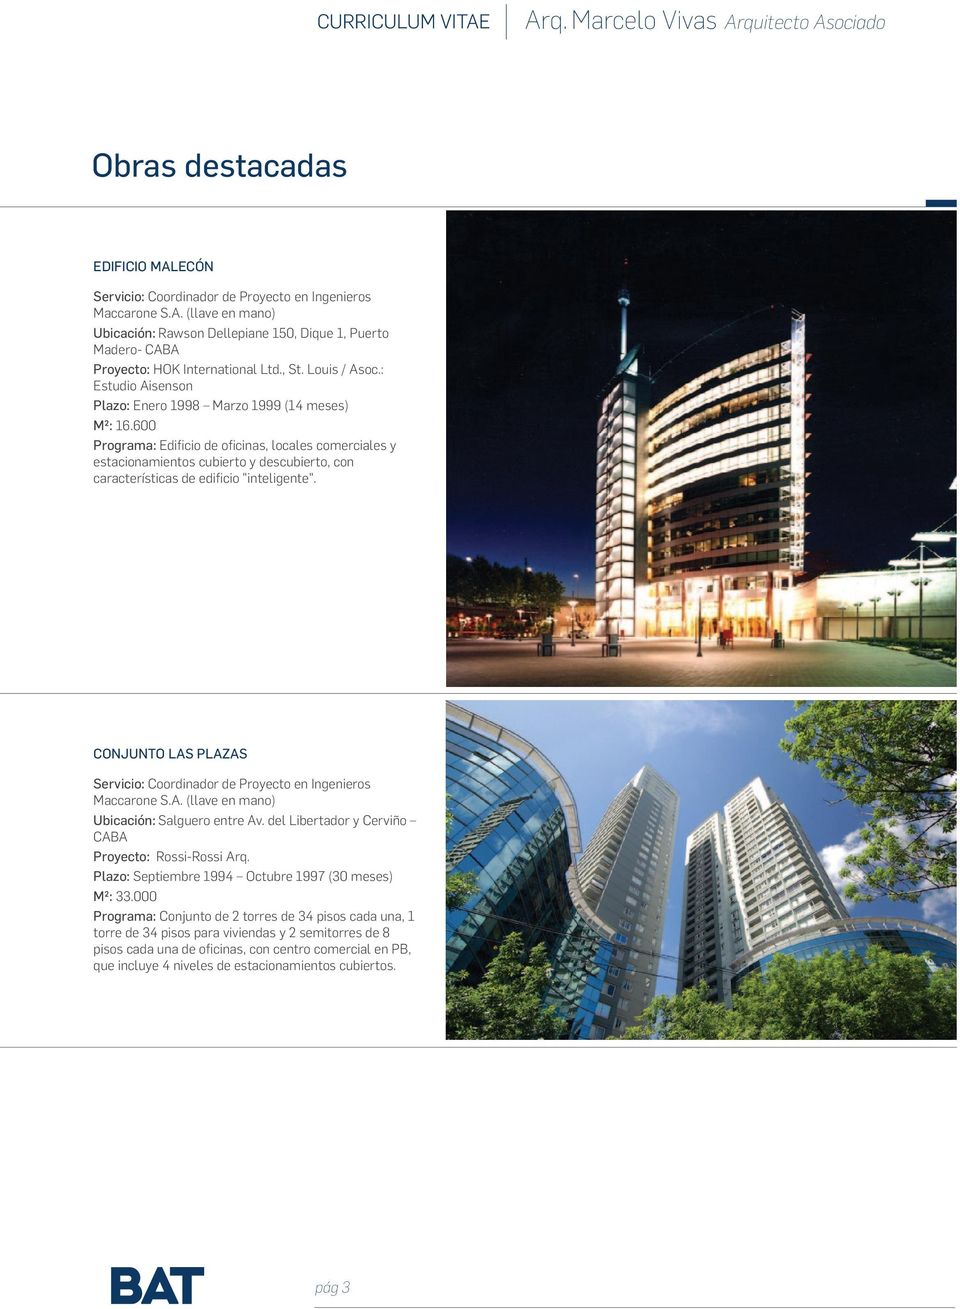 600 Programa: Edificio de oficinas, locales comerciales y estacionamientos cubierto y descubierto, con características de edificio "inteligente".